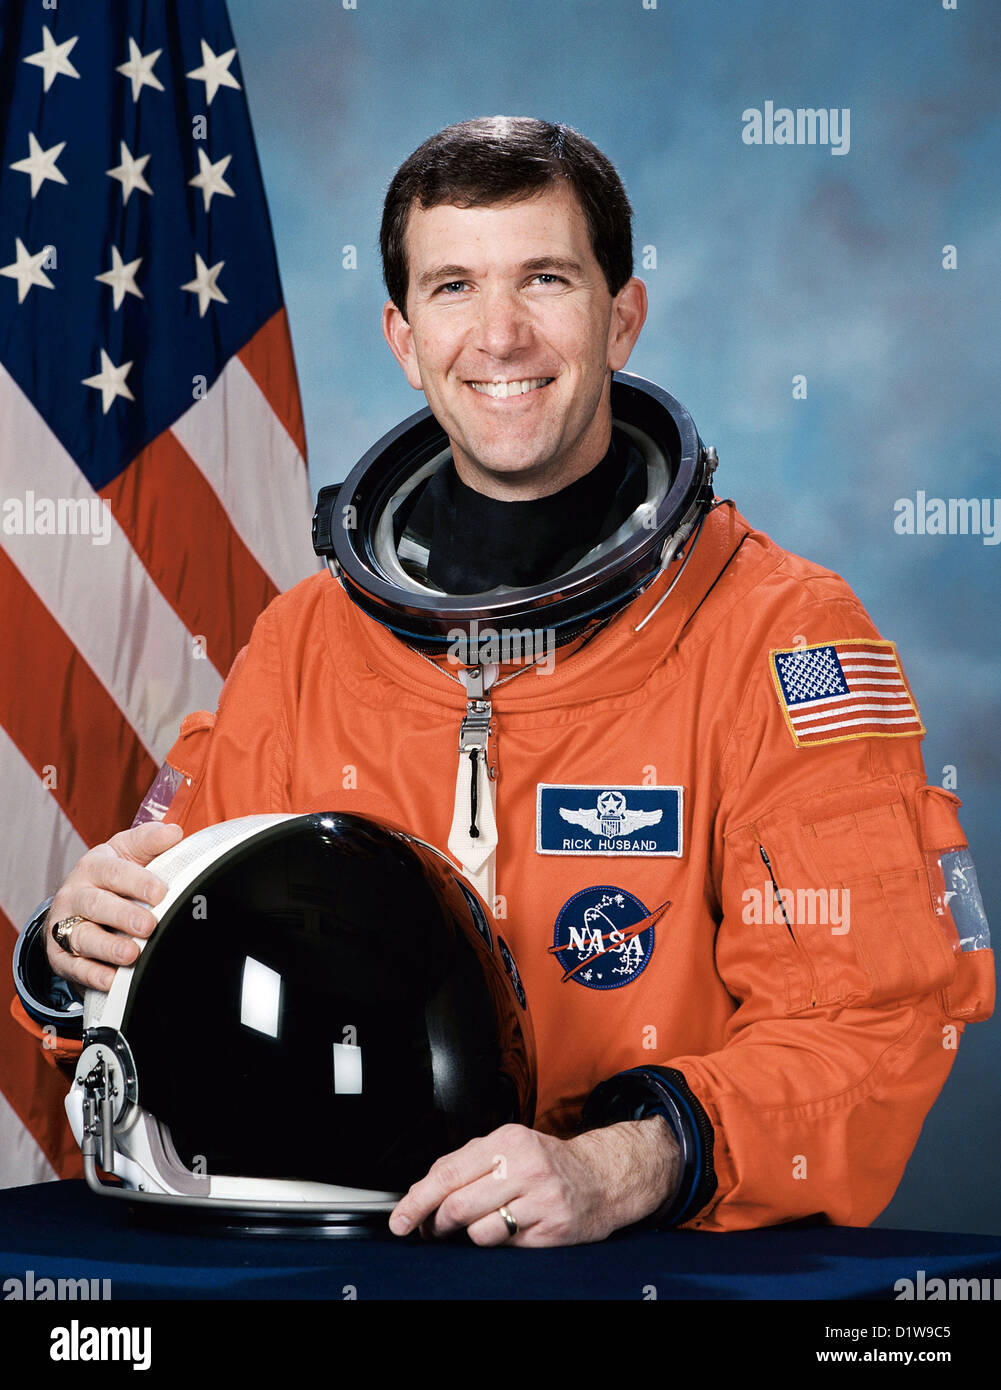 Richard mari, l'astronaute américain qui est mort lors de l'échec de la rentrée de la navette spatiale Columbia. Banque D'Images